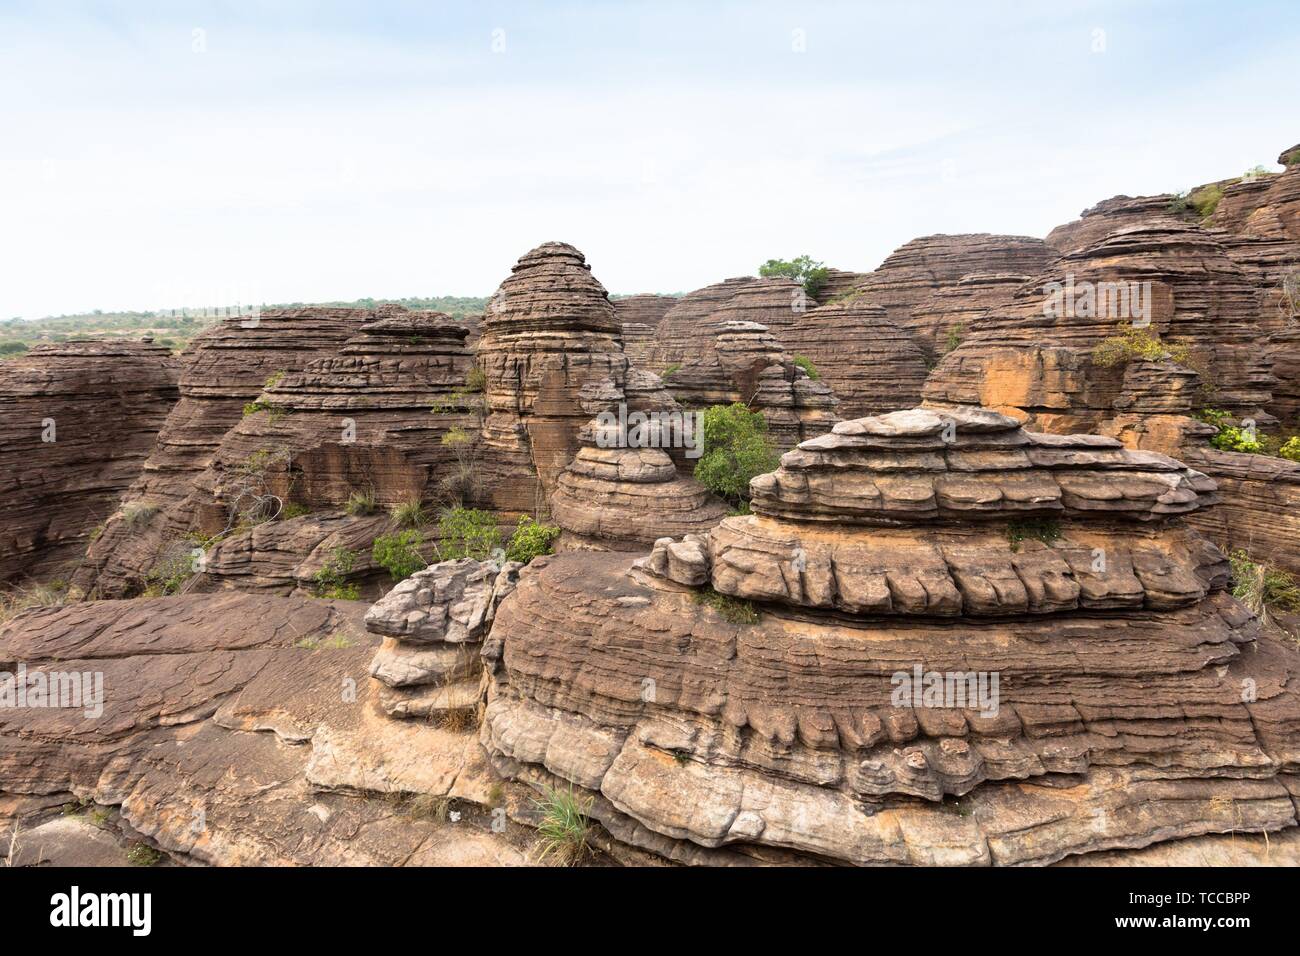 Die Kuppeln de Fabedougou sind natürliche Phänomen der Rock durch vwind und Erosion in Burkina Faso aussehen wie ein Stapel Pfannkuchen geformt. Stockfoto